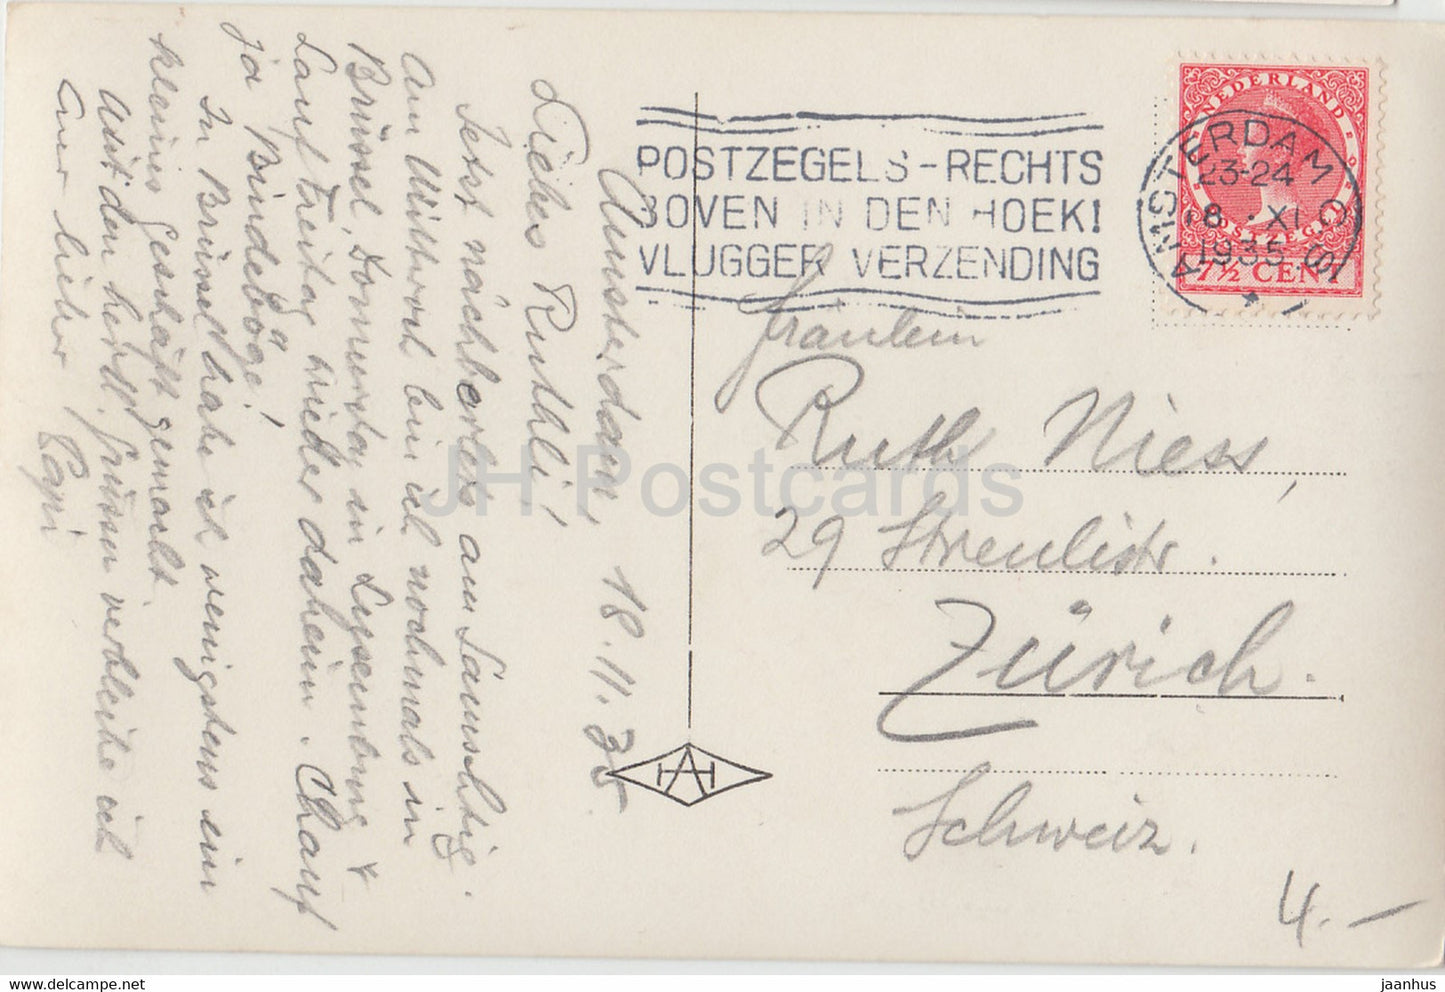 Amsterdam - Gezicht op het - steamer boat - ship - old postcard - 1935 - Netherlands - used